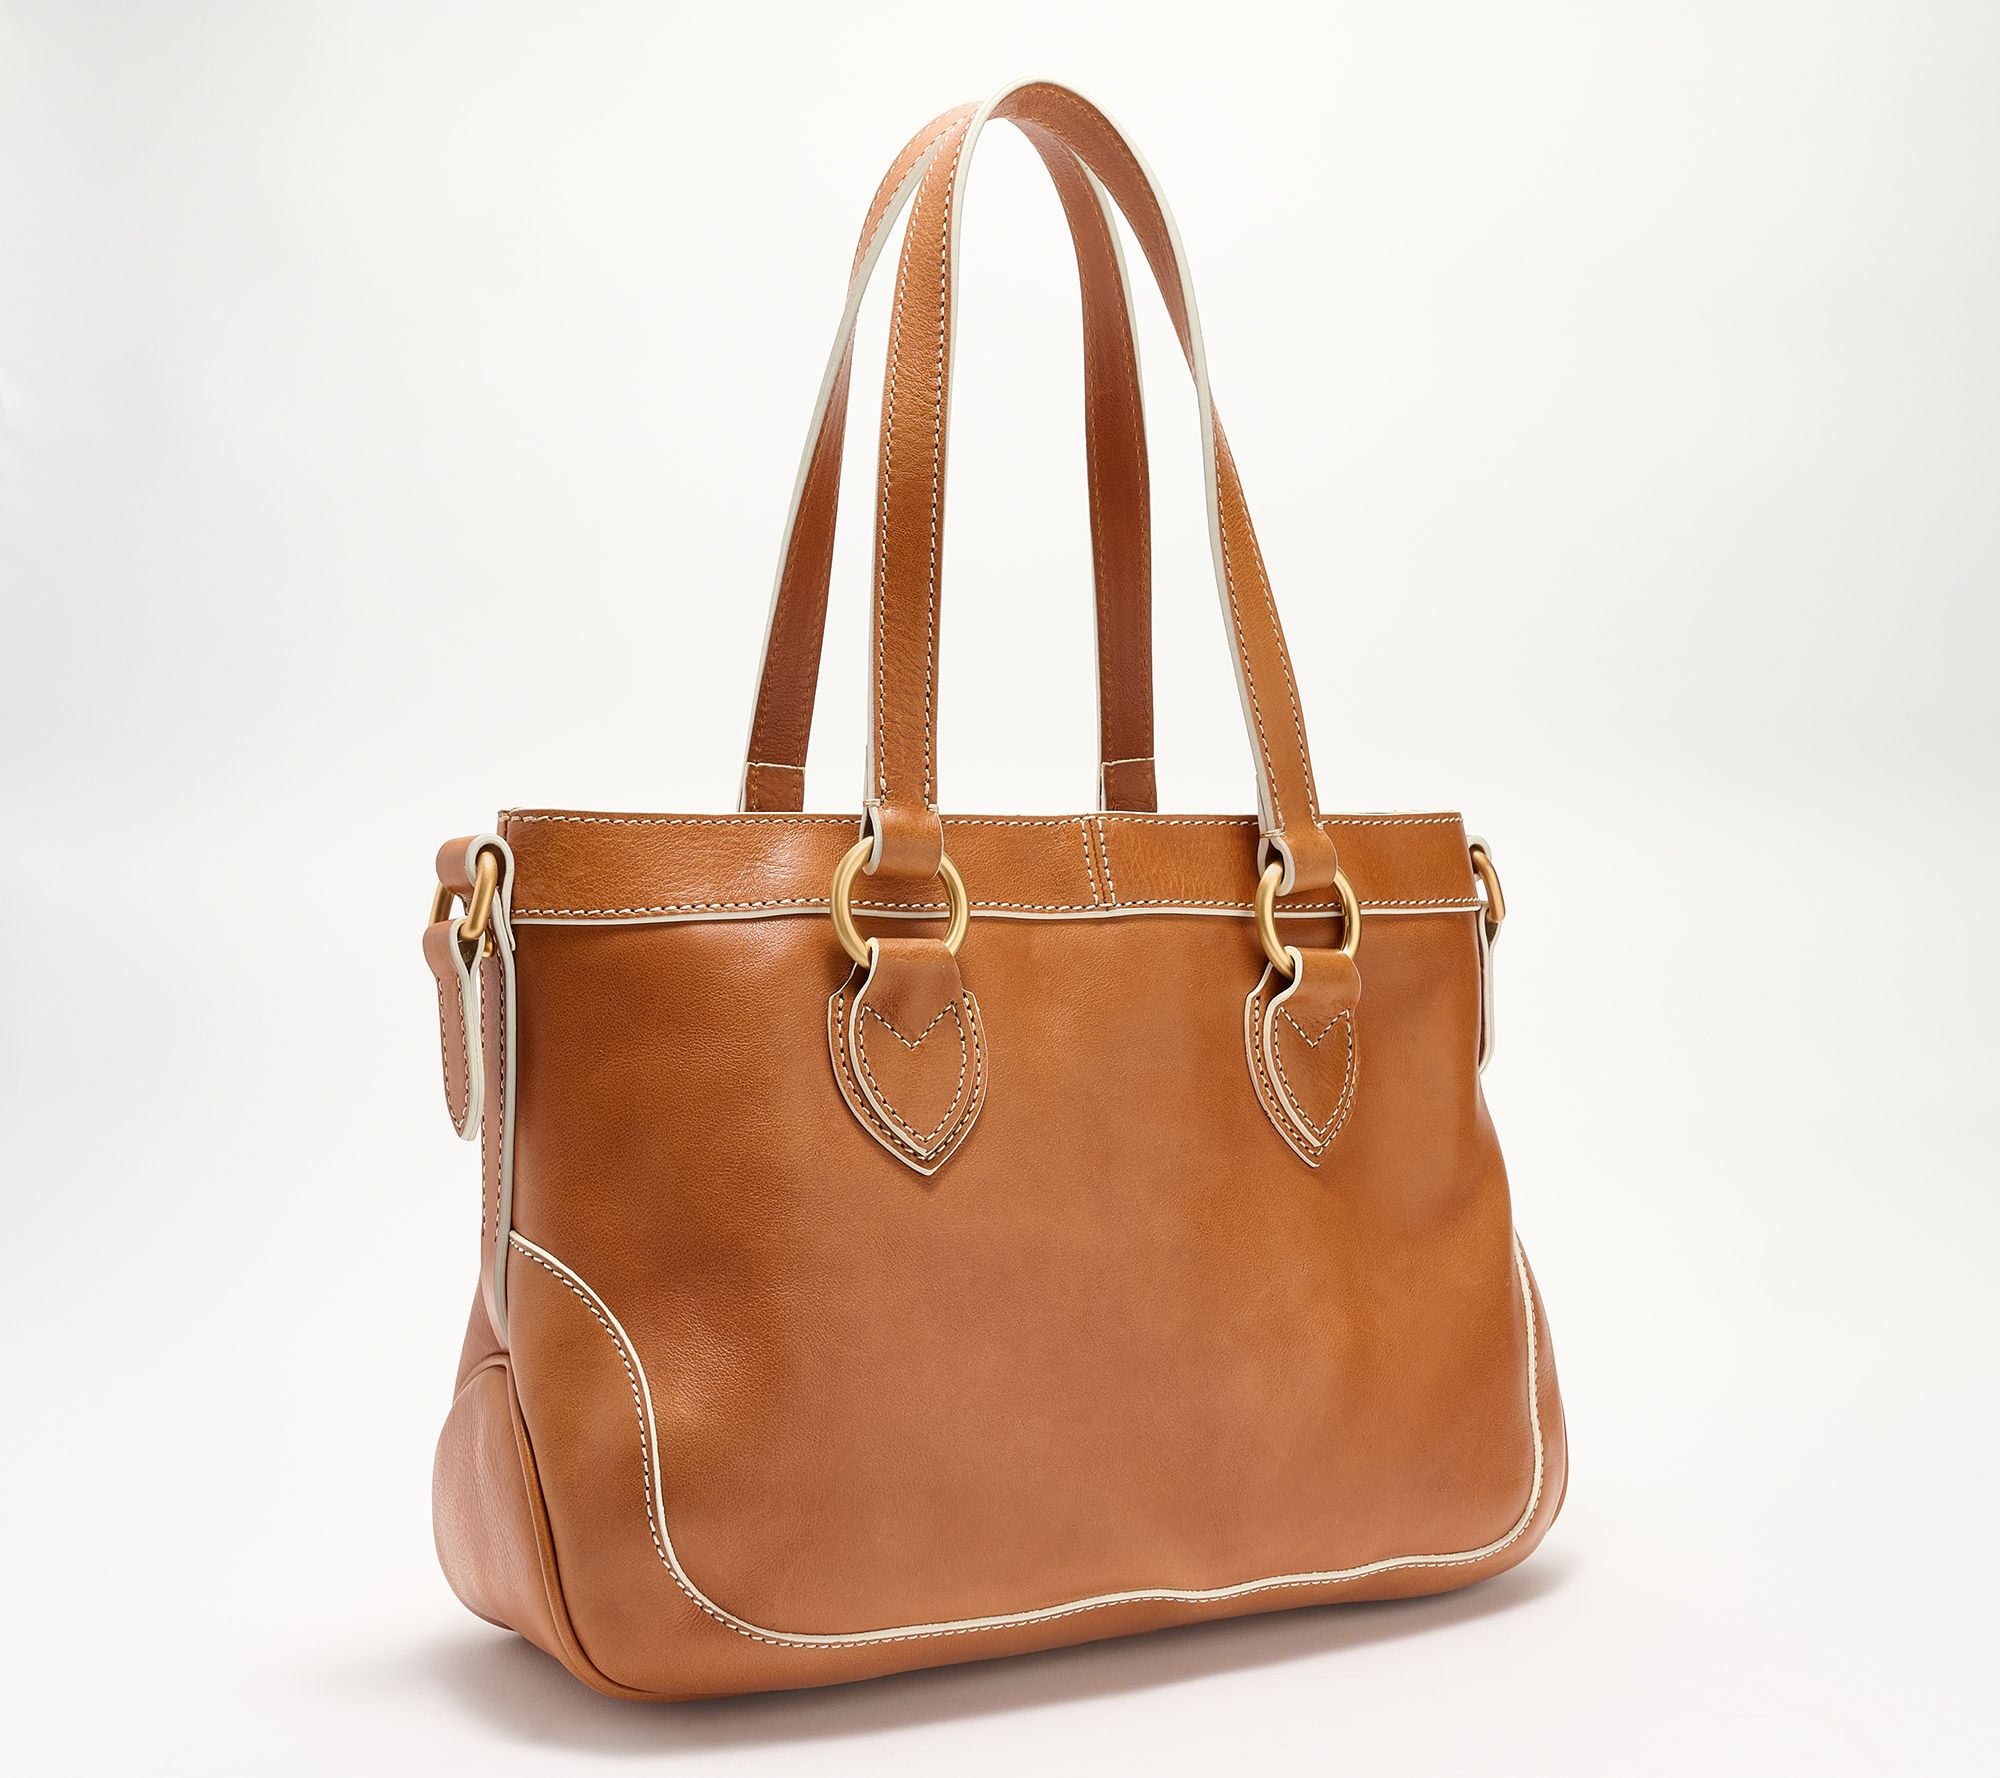 Dooney & Bourke Florentine Leather Shopper Bag ,Natural